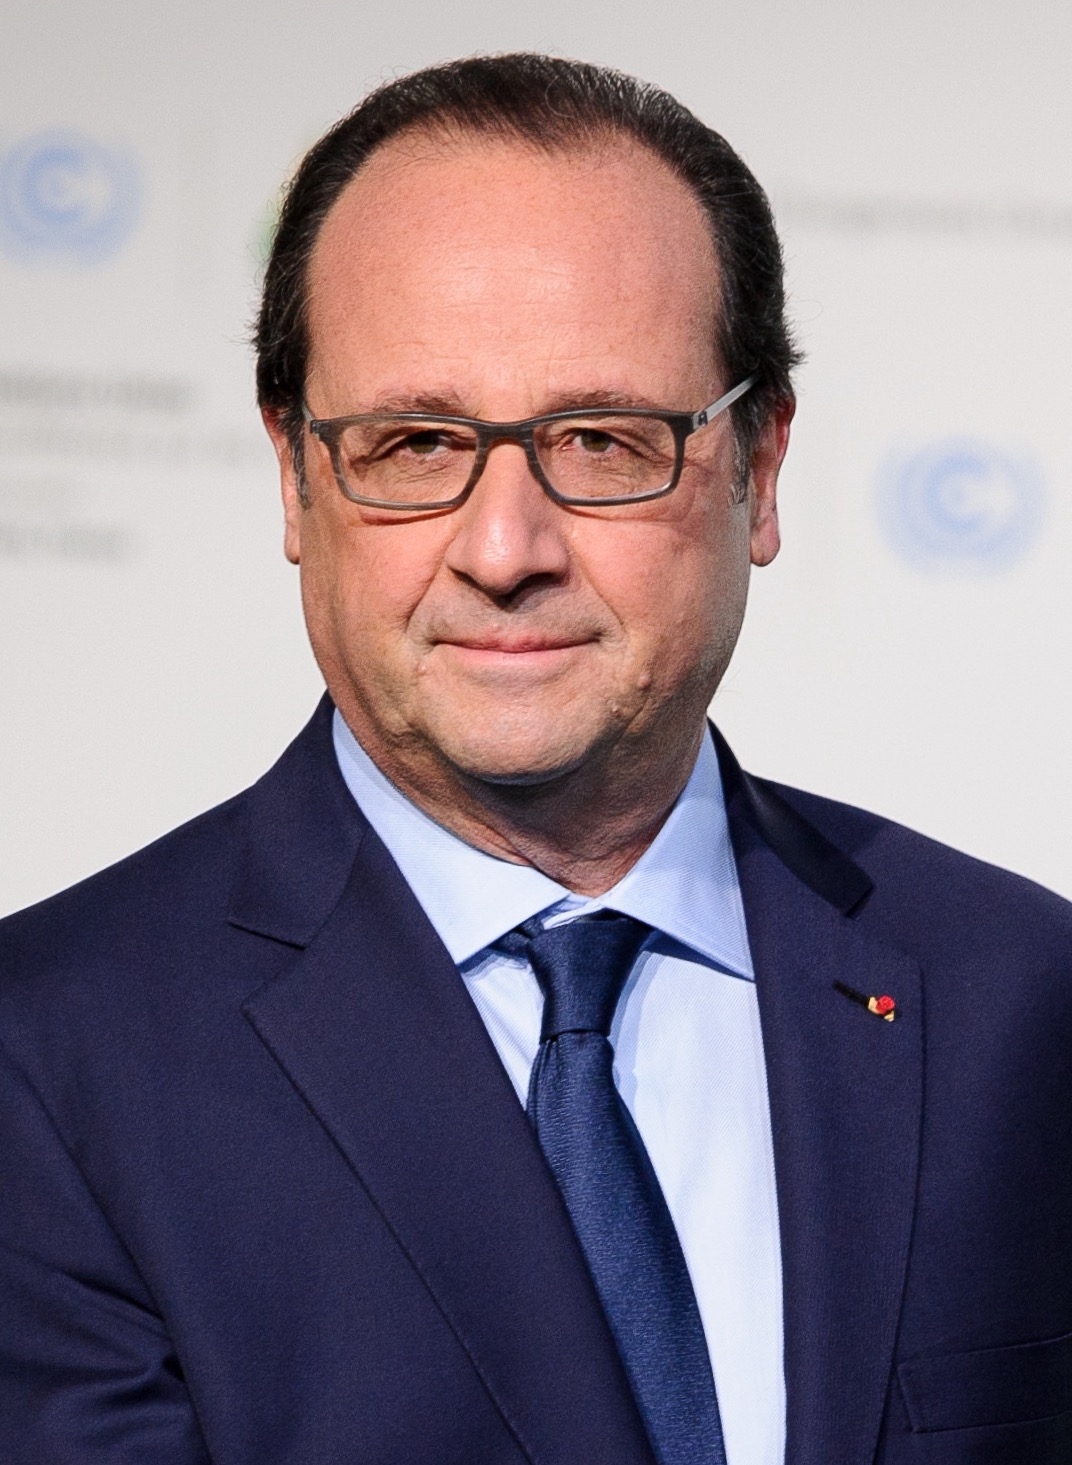 auteur François Hollande de la citation Mitterrand avait un sens pour les symboles, et il a été le premier président socialiste depuis 1958. Il voulait montrer qu'il y a une continuité historique, un lien avec les grandes figures de l'histoire française.